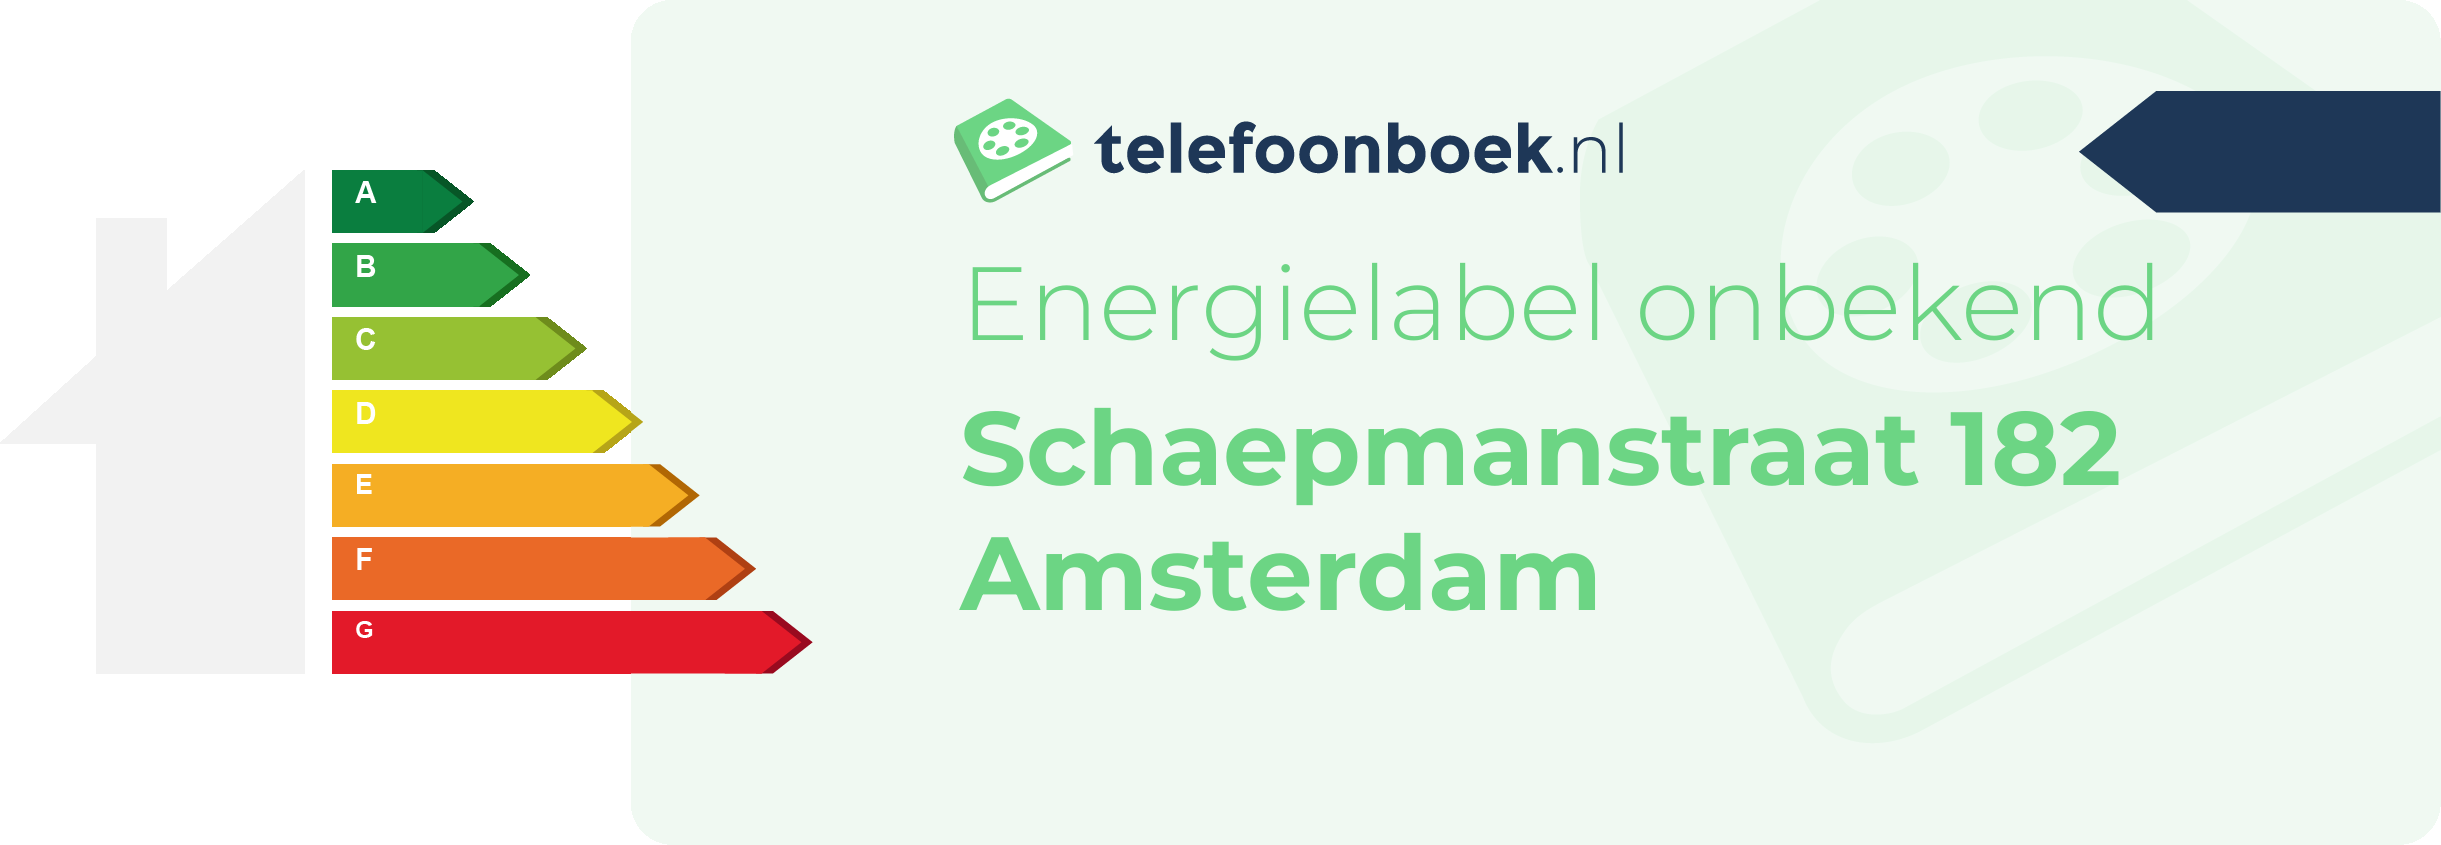 Energielabel Schaepmanstraat 182 Amsterdam